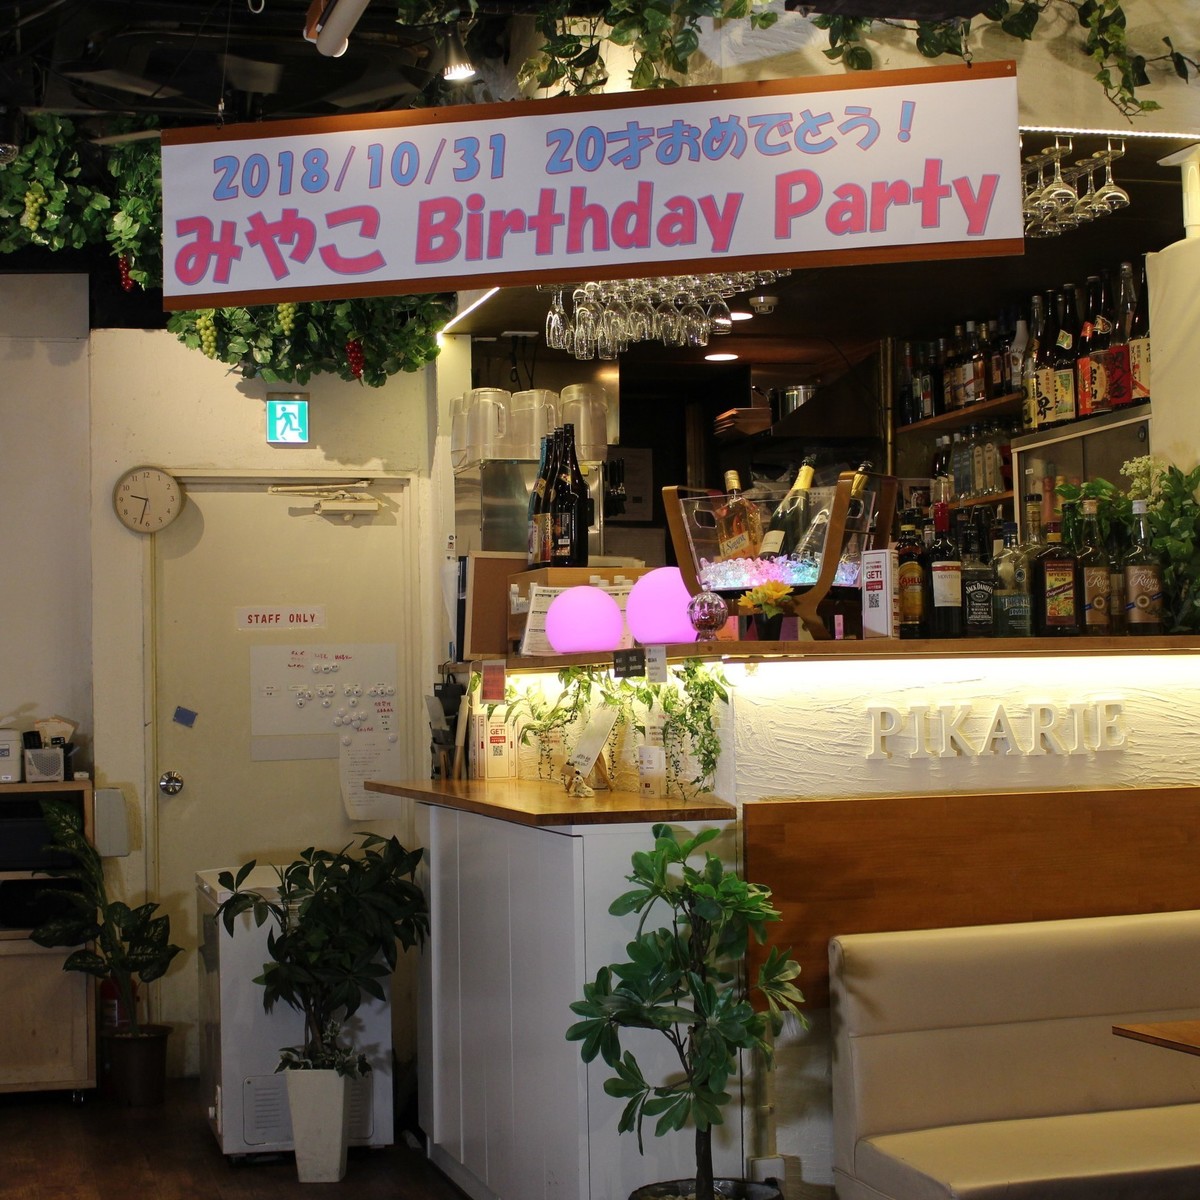 澀谷包租促銷派對如果是你的生日，你可以獲得帶有包租特權的橫幅♪